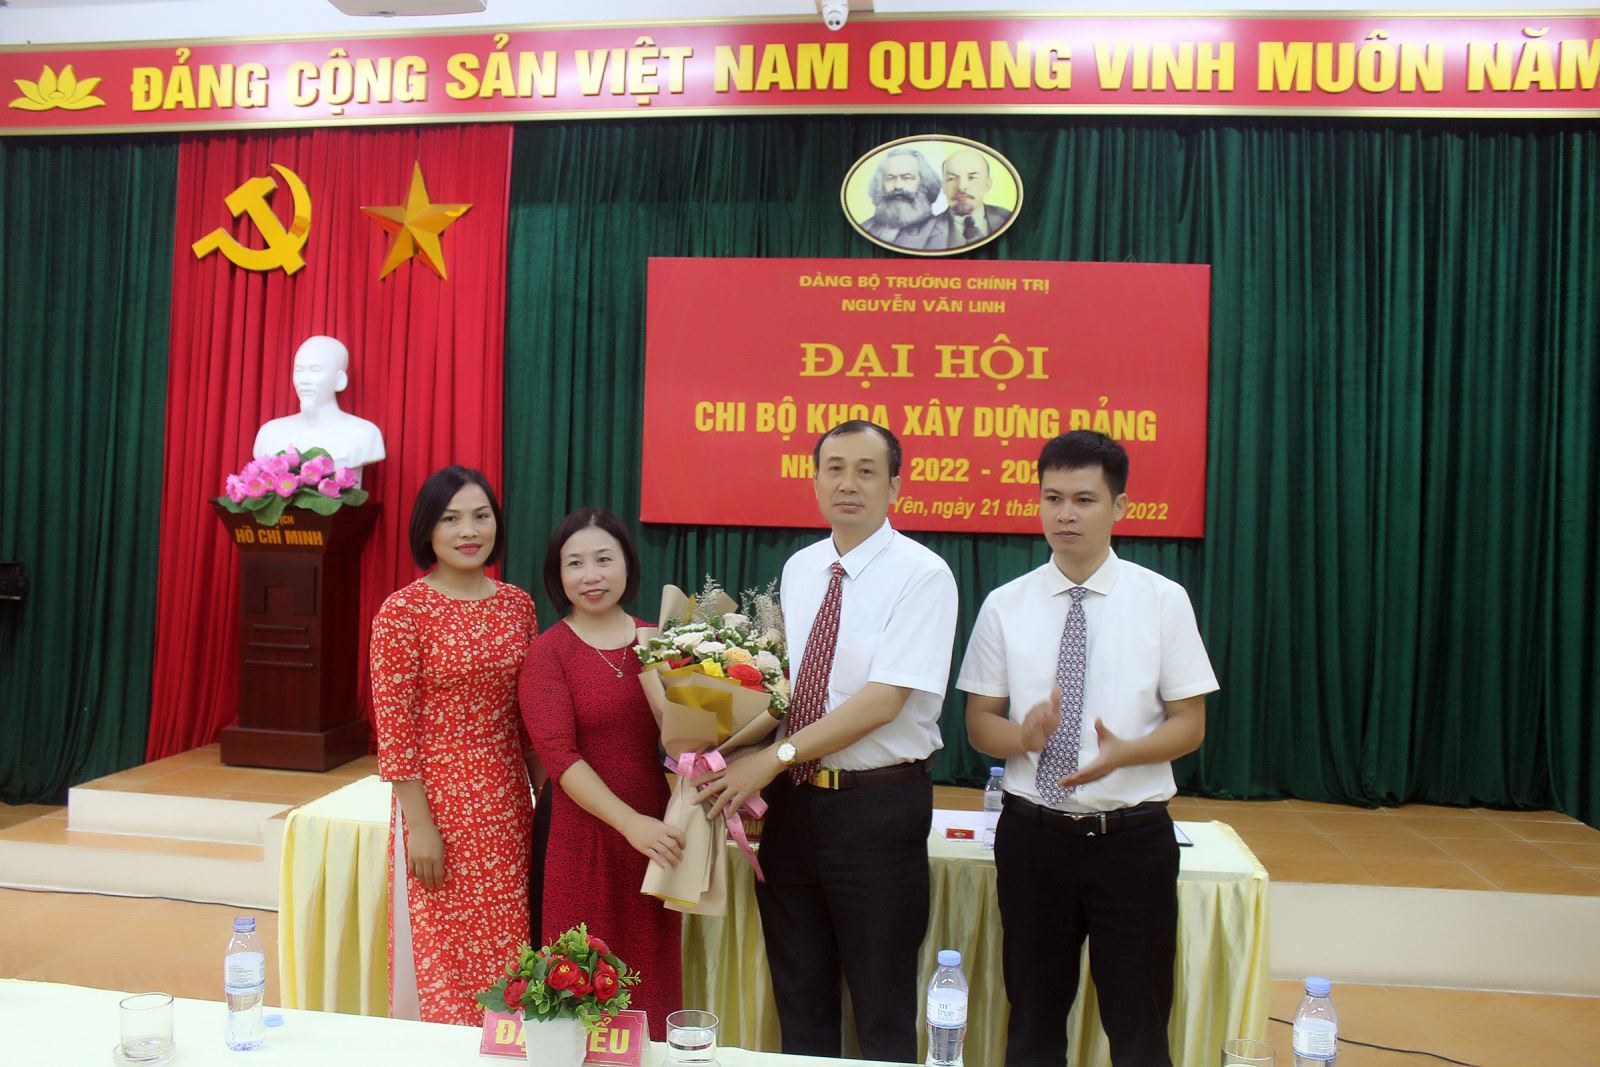 Đại hội chi bộ khoa Xây dựng Đảng trường chính trị Nguyễn Văn Linh nhiệm kỳ 2022-2025